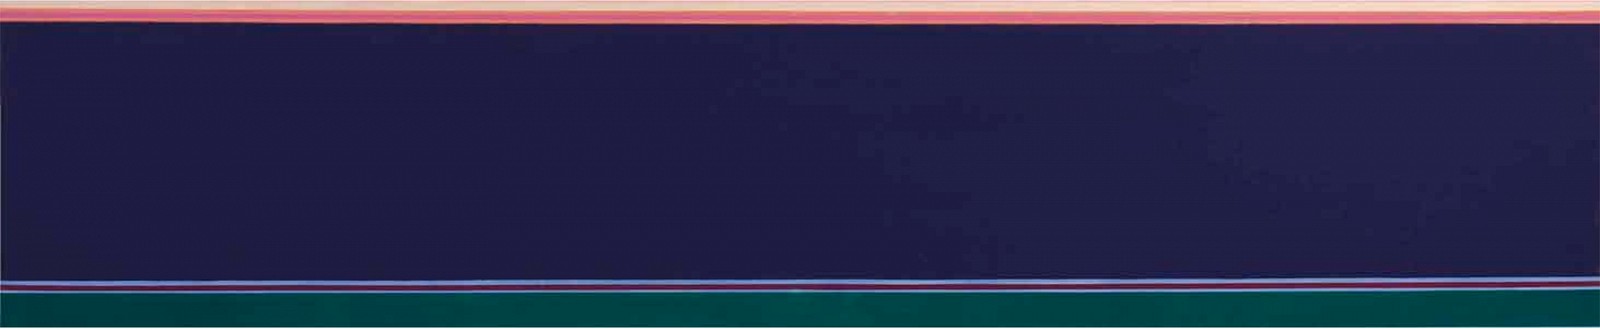 Kenneth Noland, Blue Nile | SOLD, 1969
Acrylic on canvas, 38 1/2 x 182 in. (97.8 x 462.3 cm)
NOL-00002